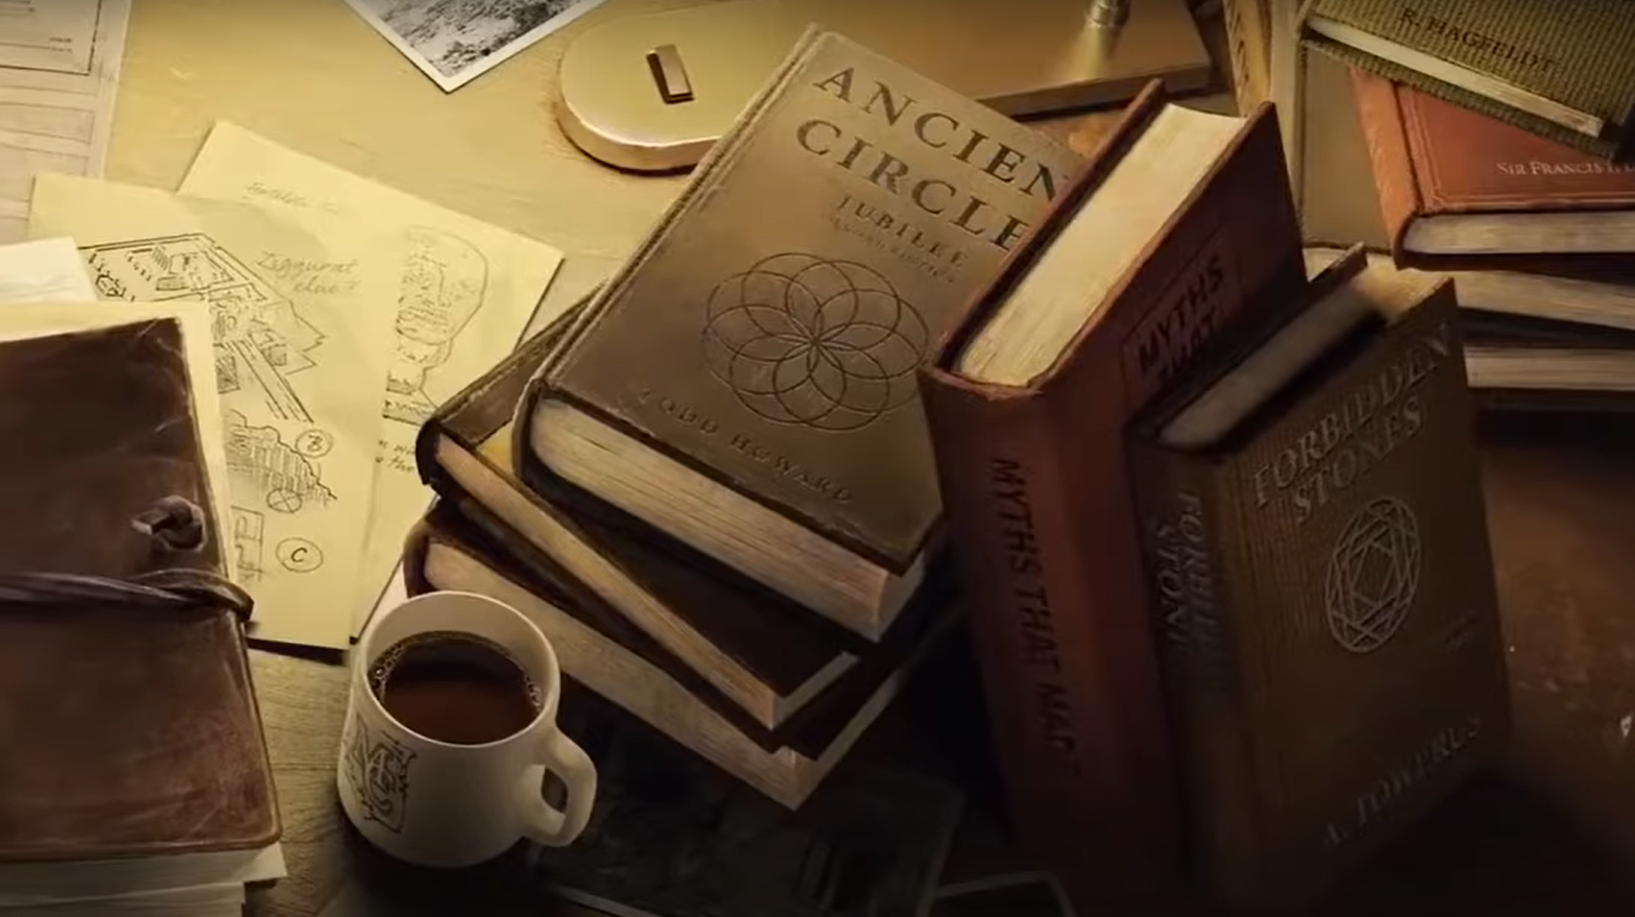 Captura de pantalla del avance de Indiana Jones de MachineGames que muestra un libro titulado Ancient Circles